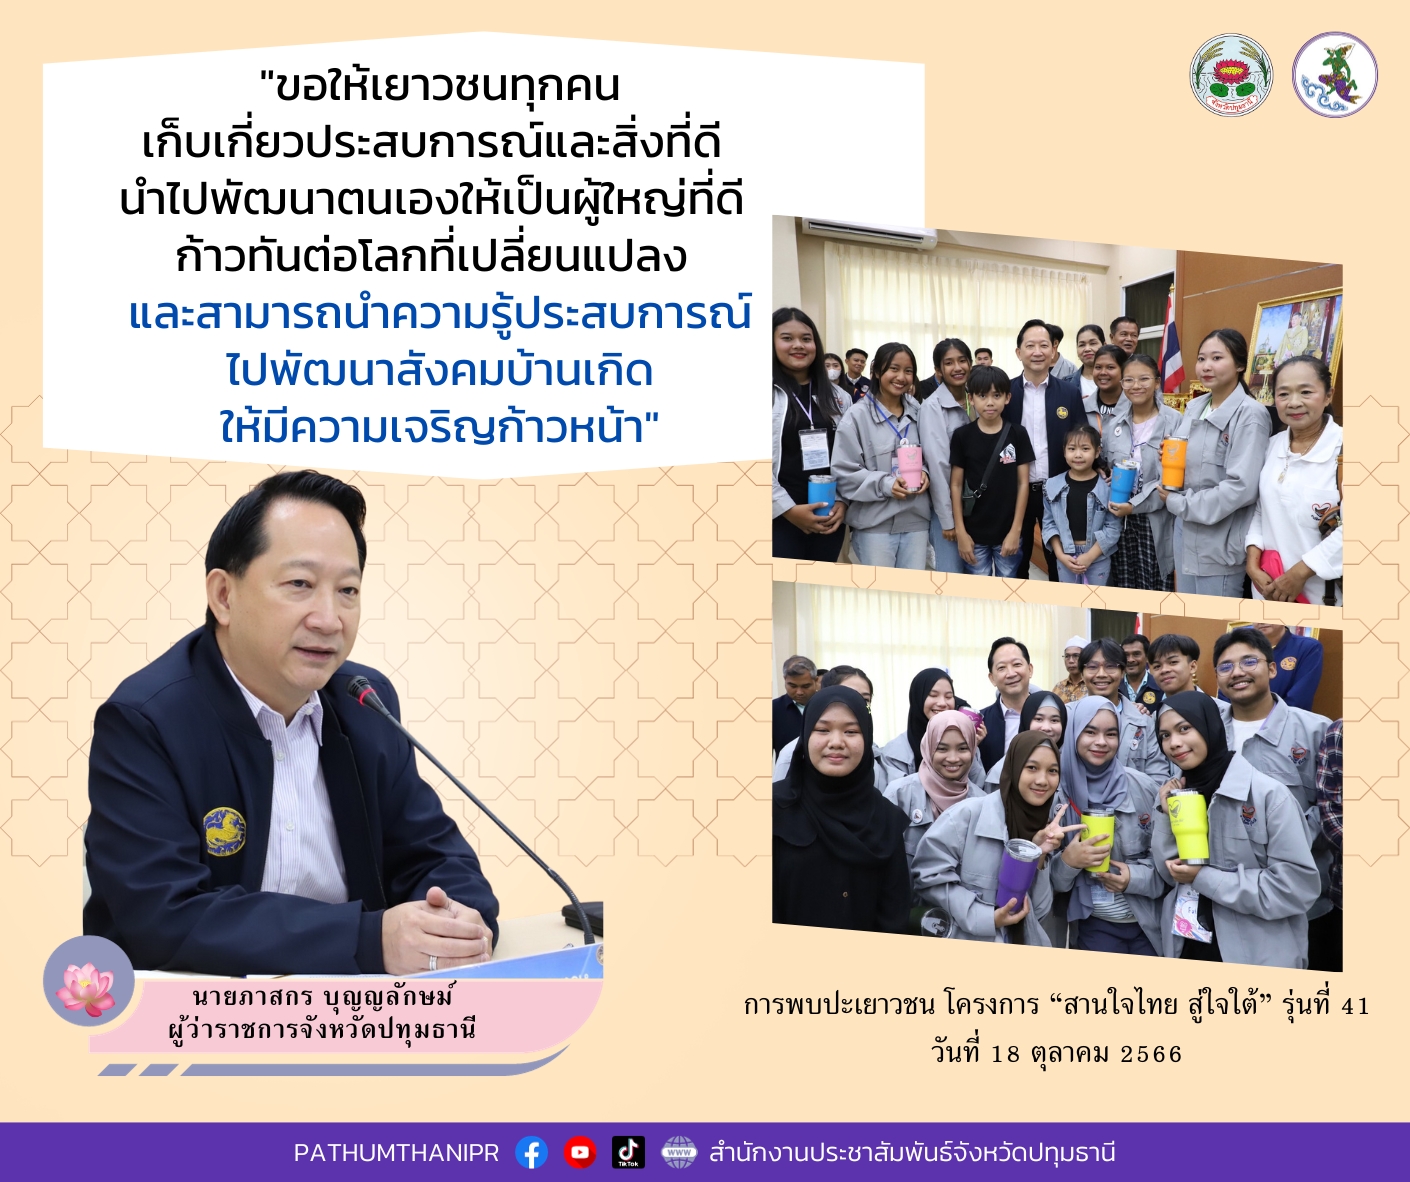 ผู้ว่าราชการจังหวัดปทุมธานี ให้โอวาทให้เยาวชนในโครงการ “สานใจไทย สู่ใจใต้” รุ่นที่ 41